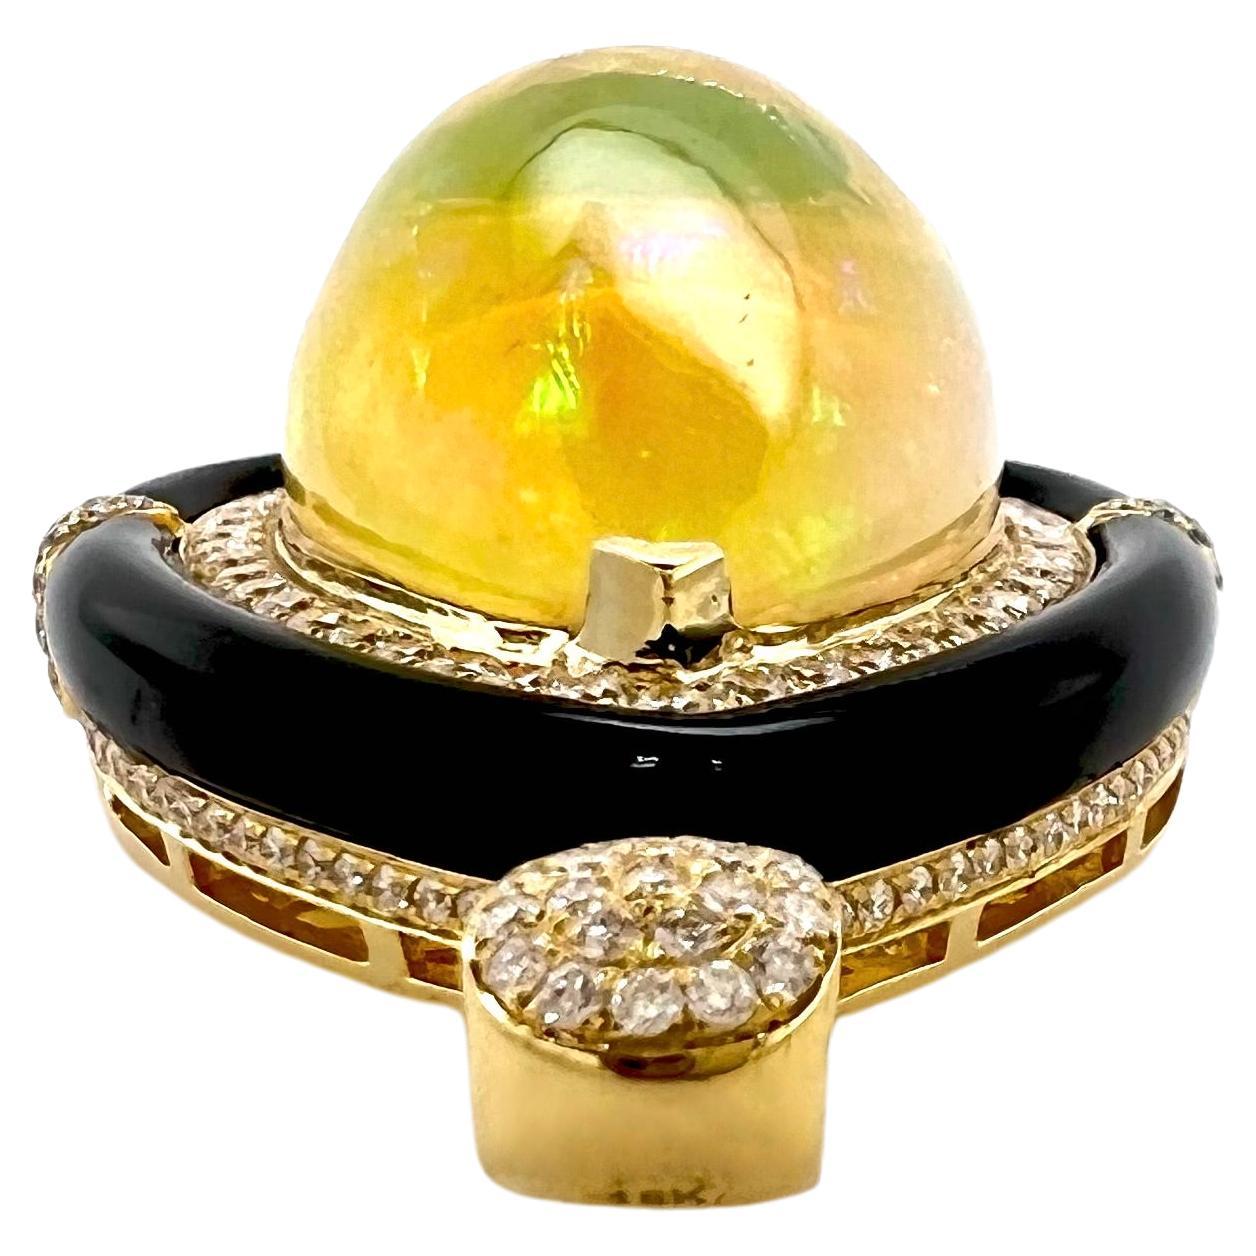 Ce magnifique pendentif en opale éthiopienne est fabriqué à la main avec des diamants et de l'onyx.  Le cadre fait à la main entoure l'opale en forme de goutte d'eau de manière concise tandis que les diamants complètent le fabuleux pendentif. 